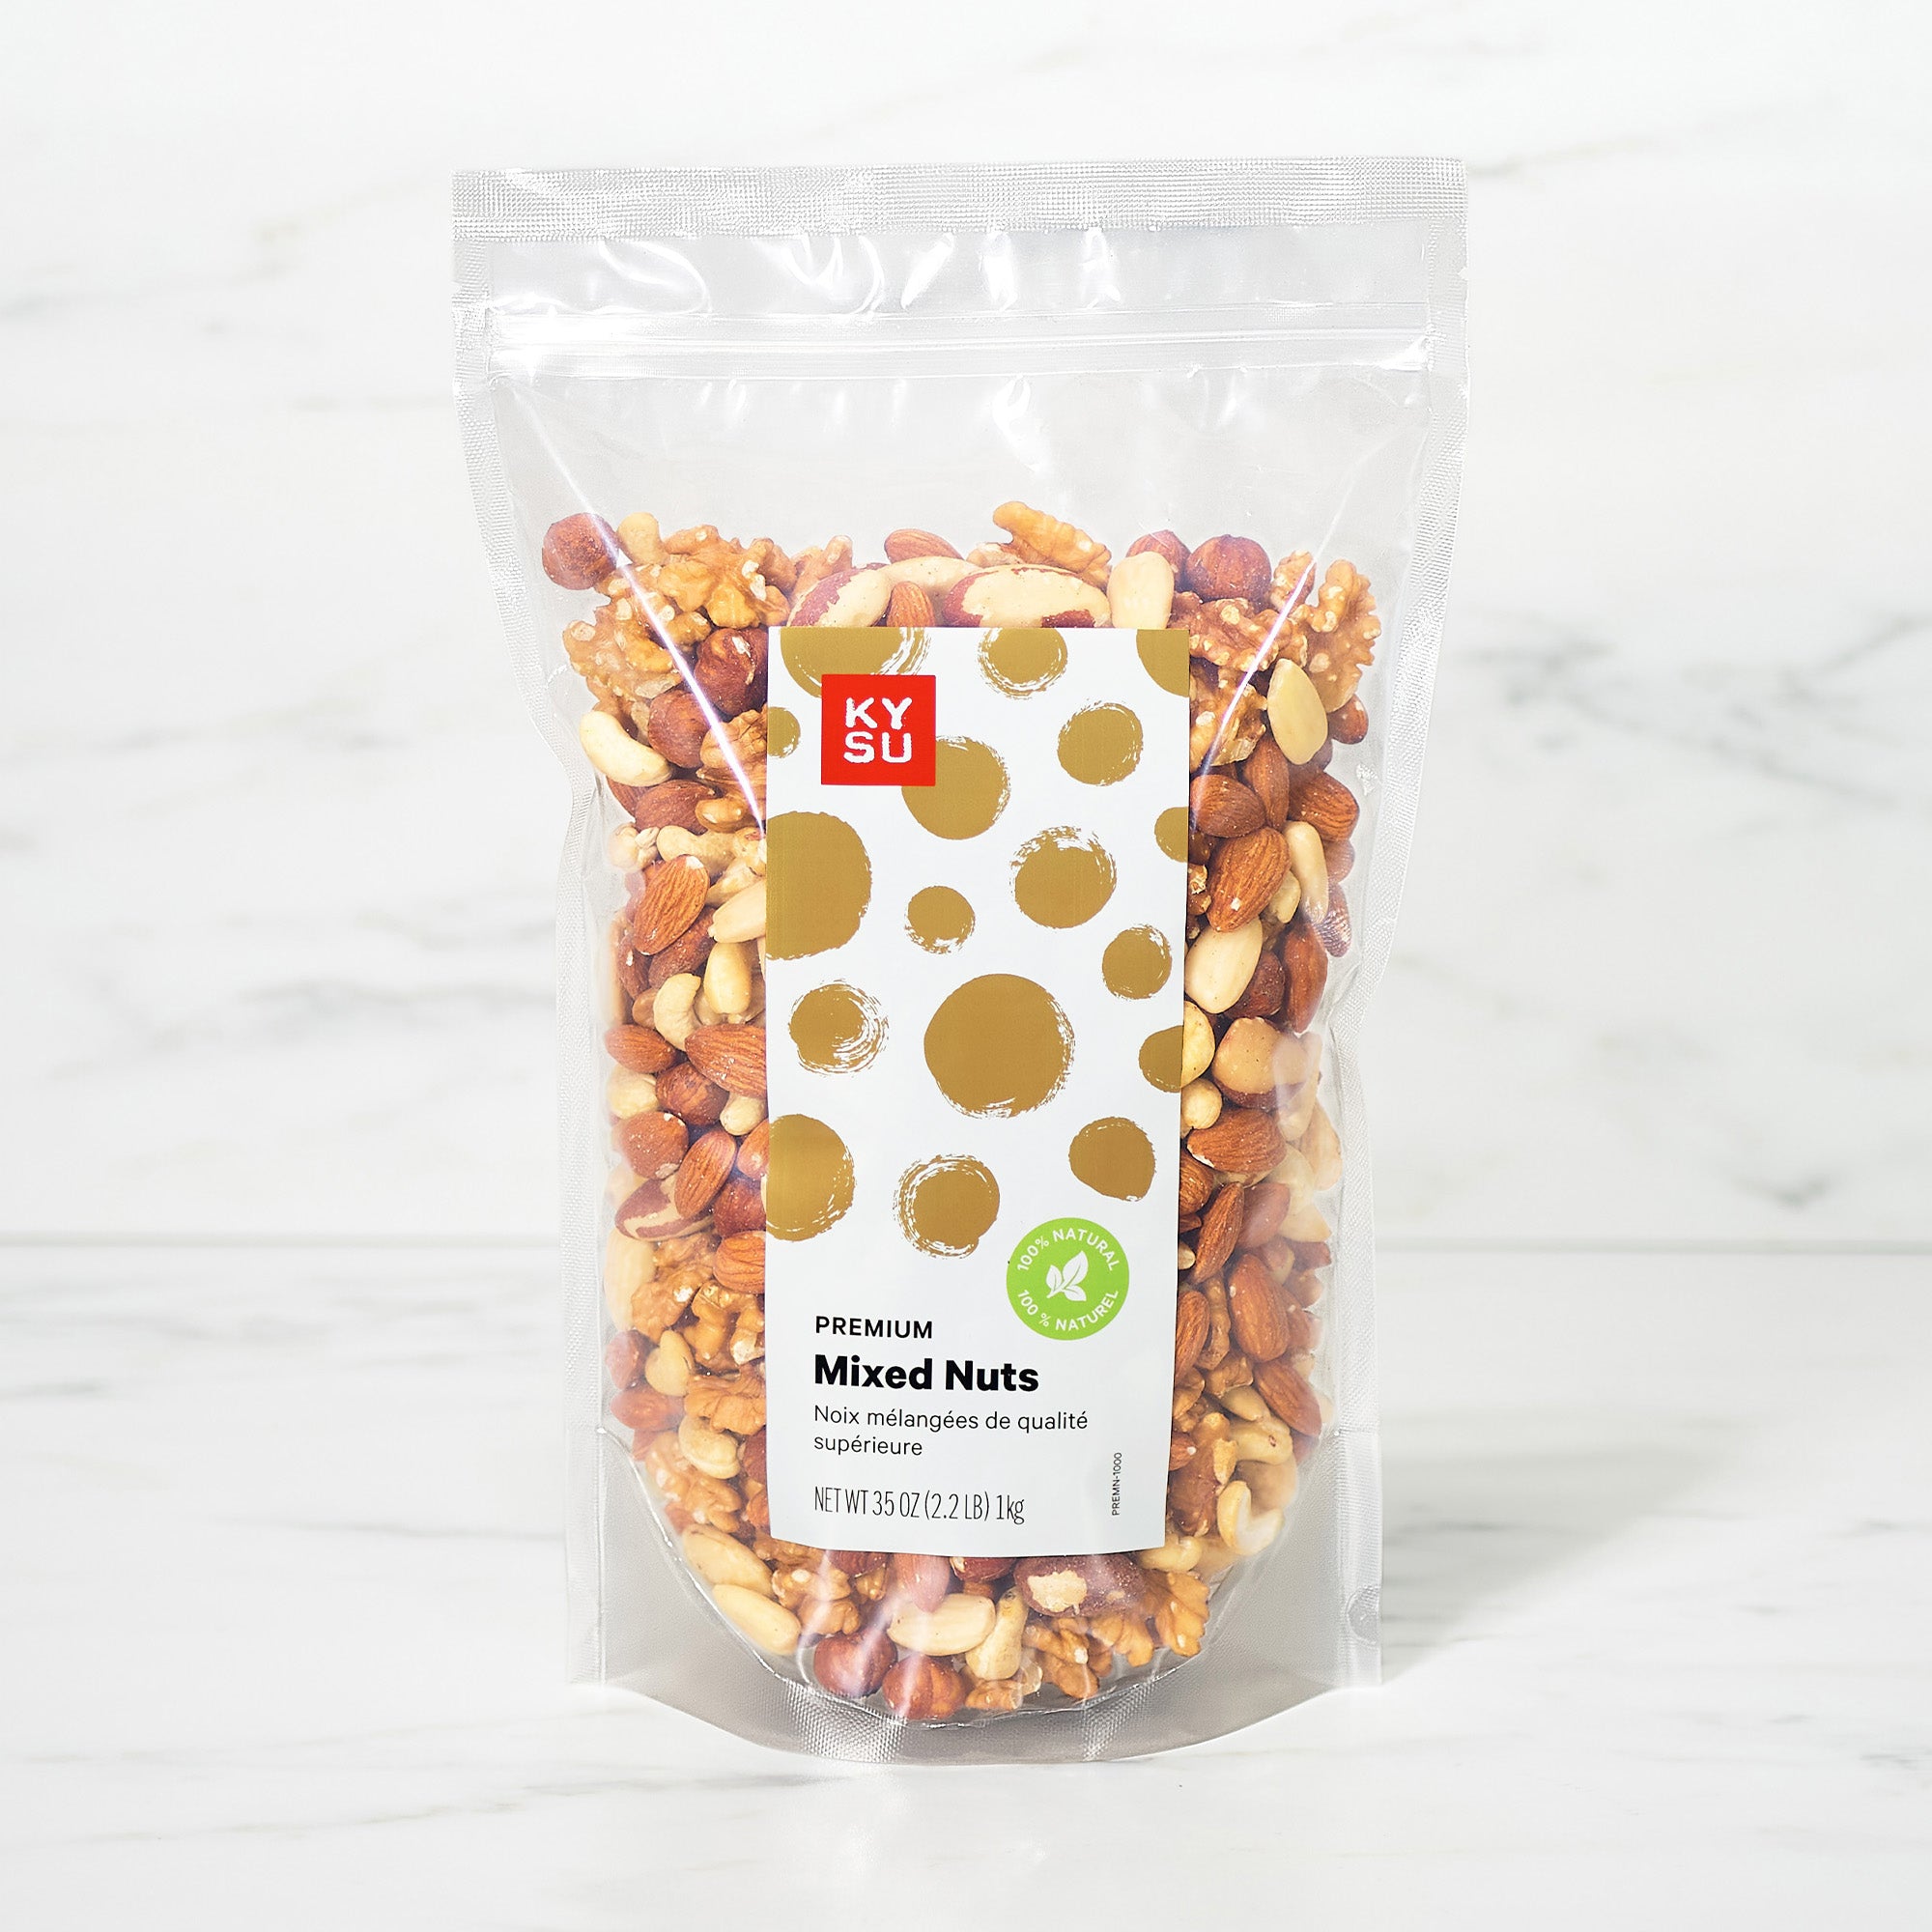 Premium mixed nuts, 2.2 lb